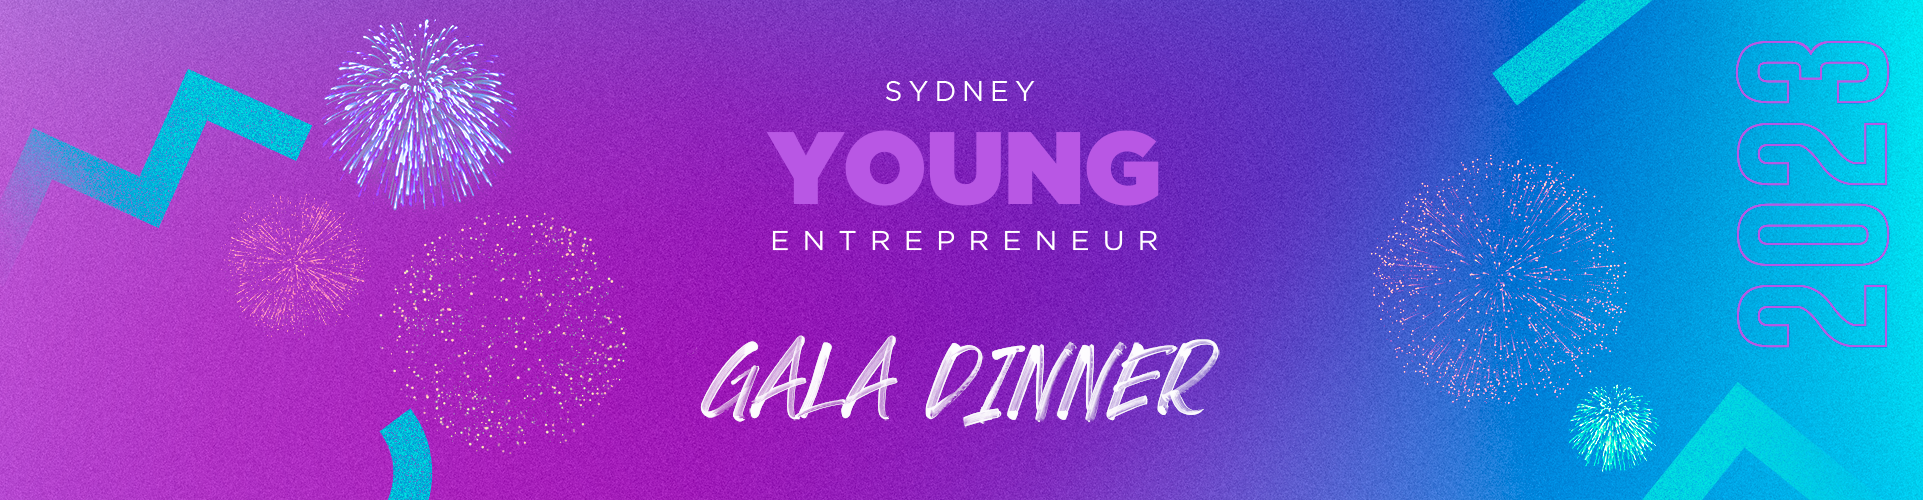 Sydney Young Entrepreneur